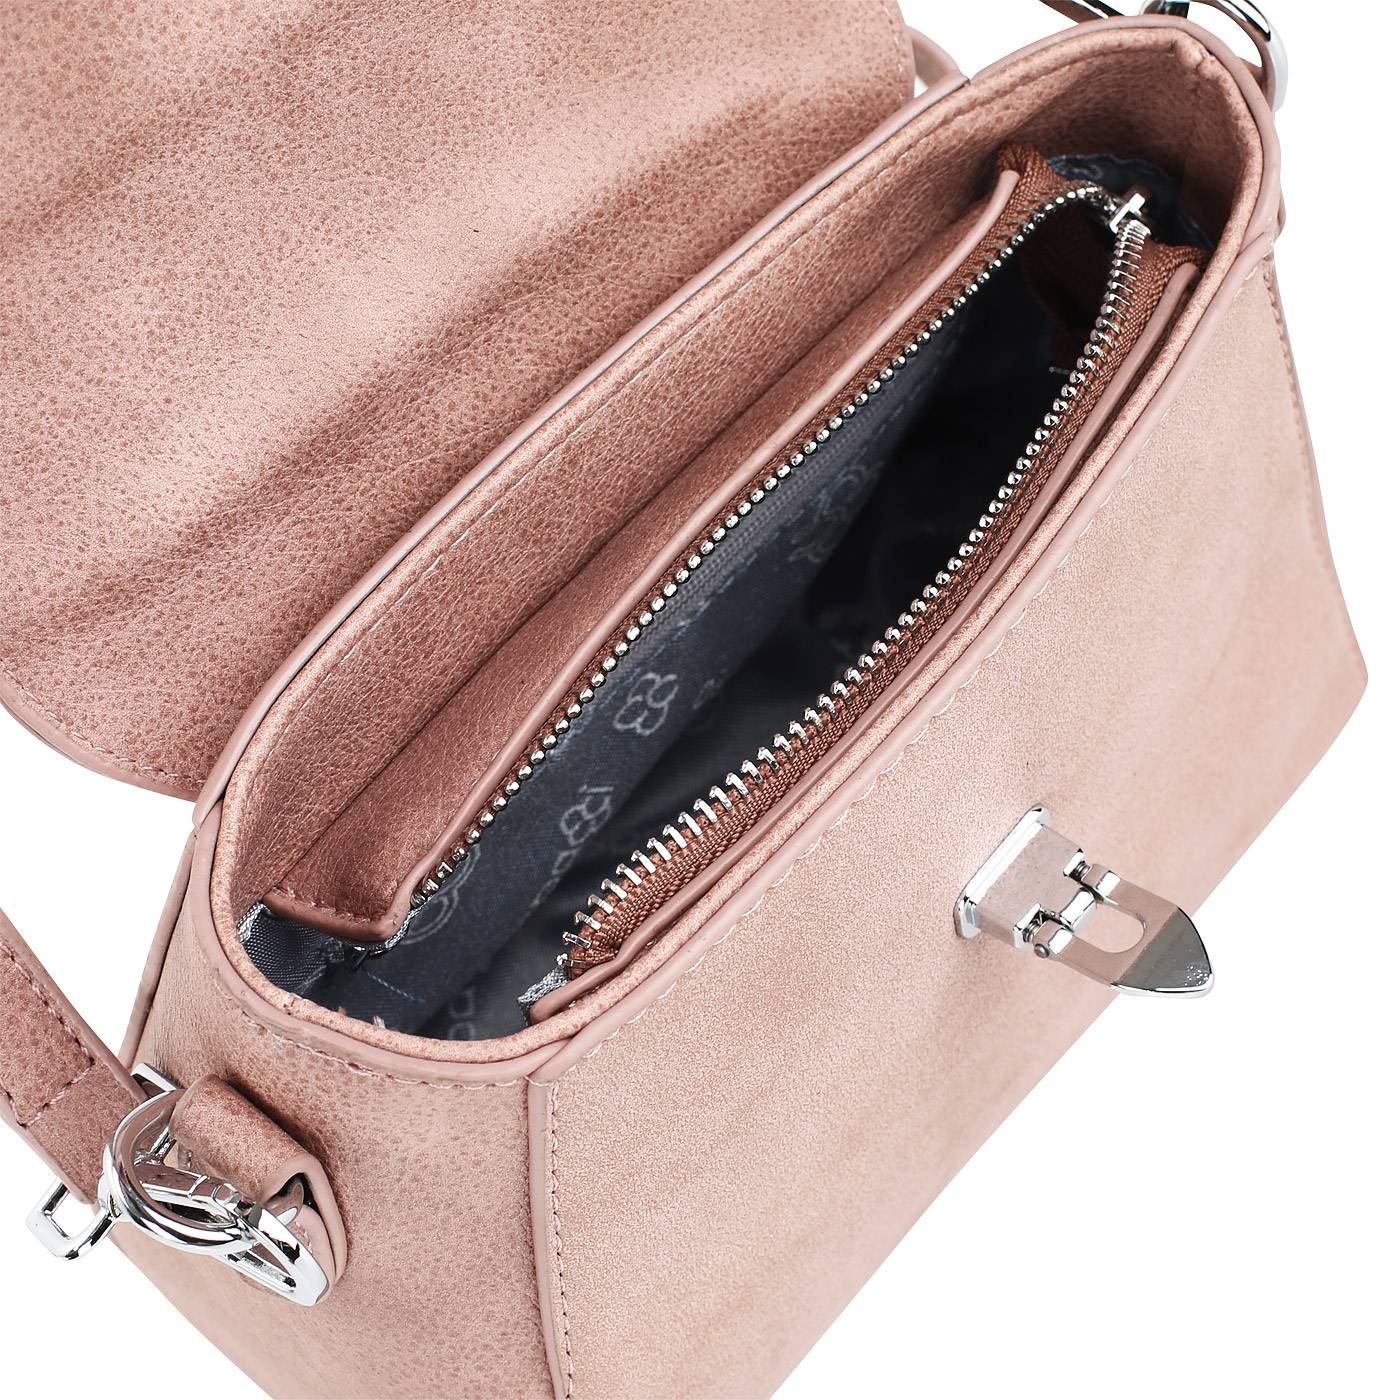 Розовая сумочка  с плечевым ремешком Dispacci 